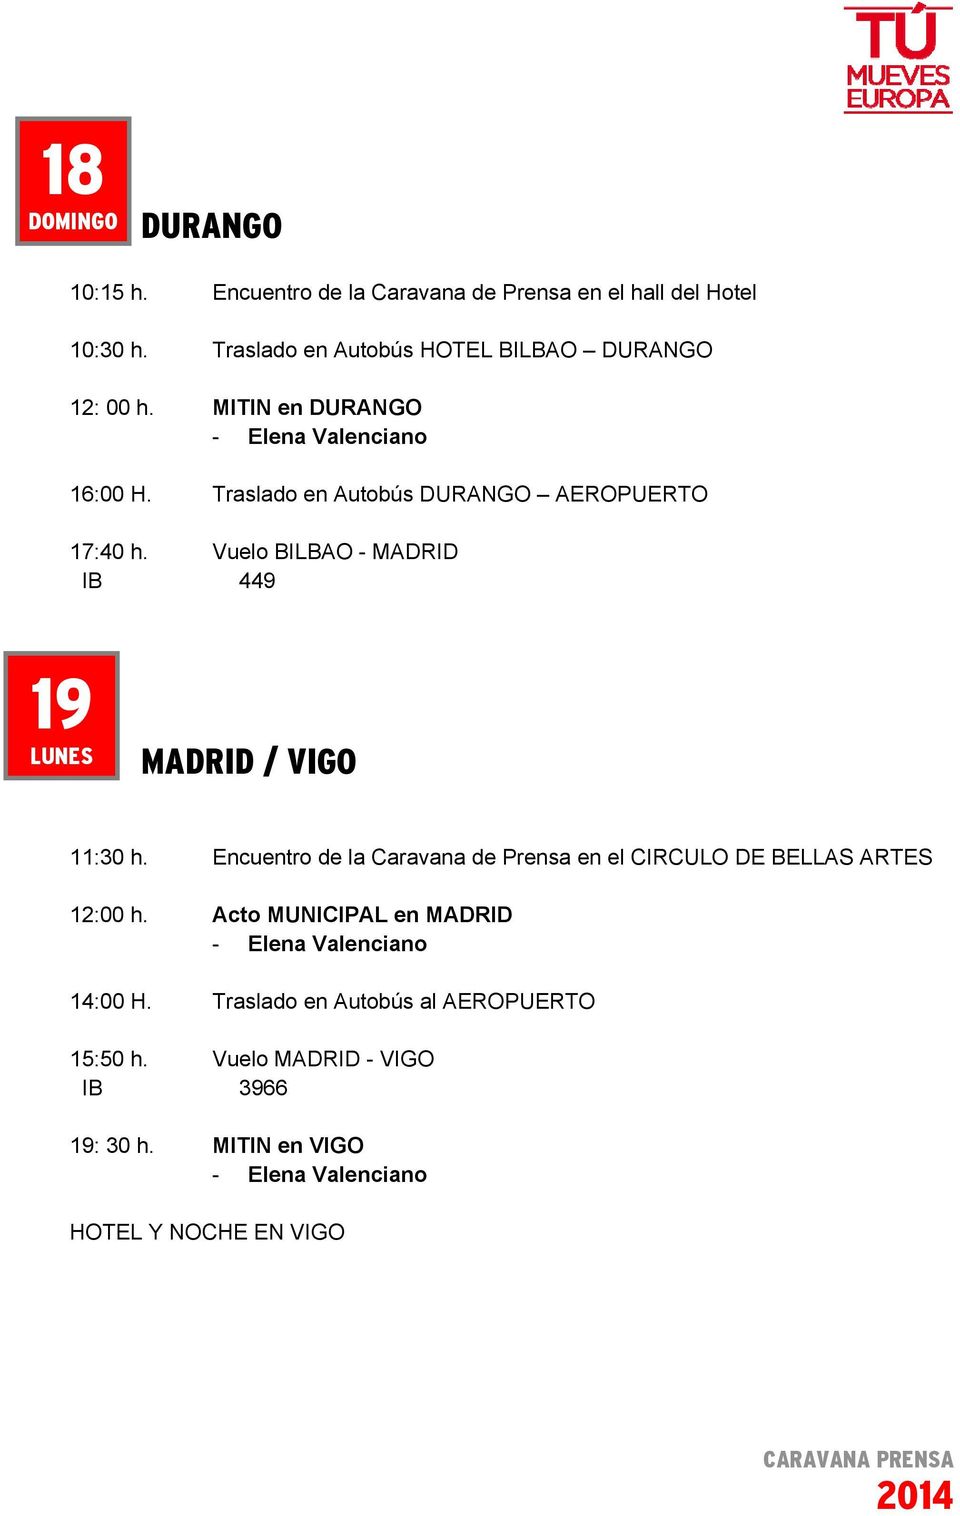 Vuelo BILBAO - MADRID IB 449 19 LUNES MADRID / VIGO 11:30 h.